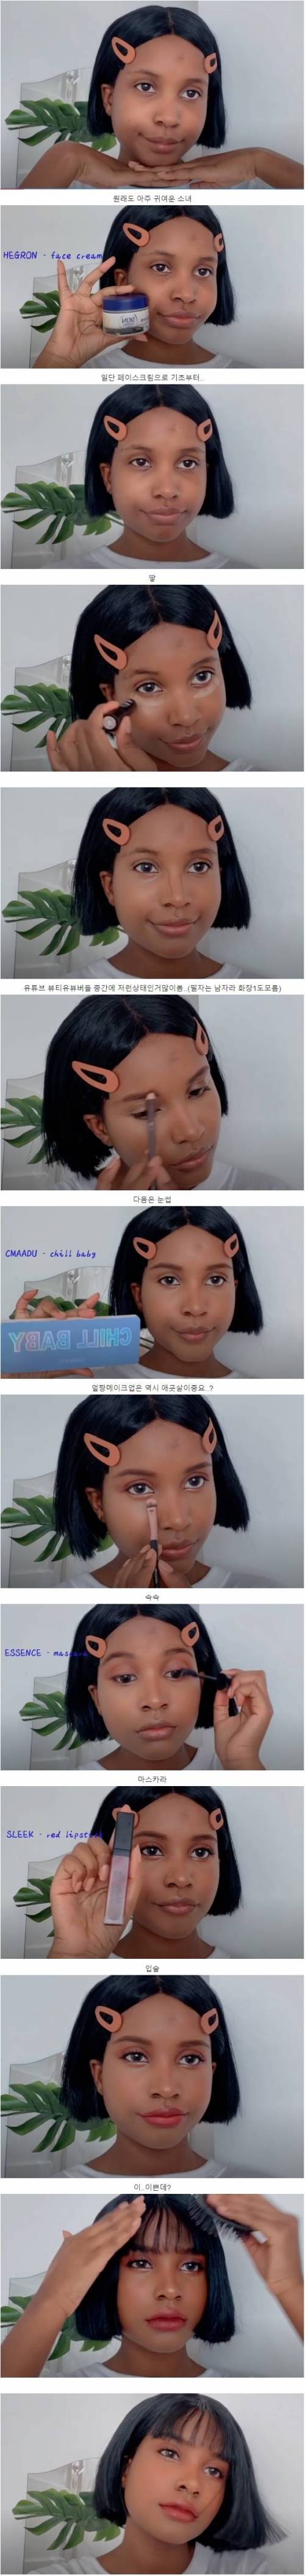 [스압] 흑인소녀의 한국식 메이크업.jpg